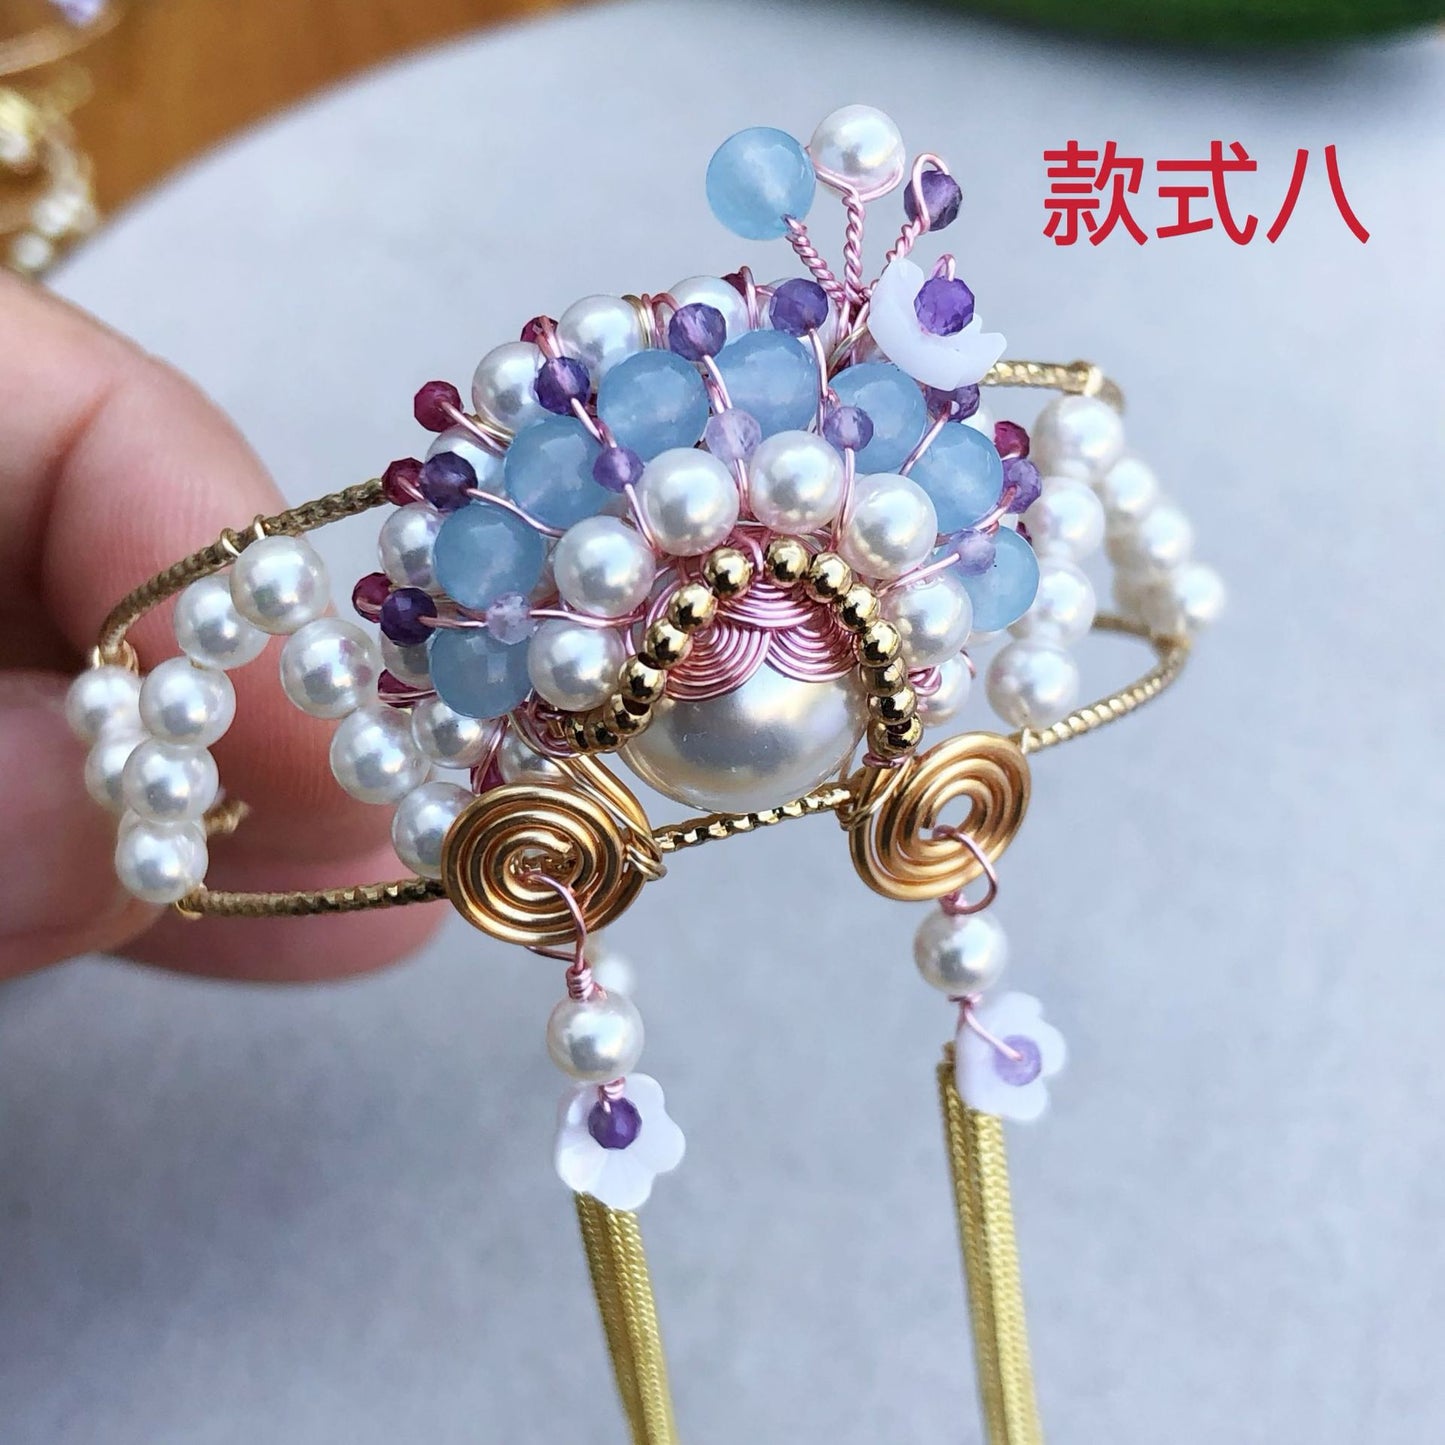 Diseño de pulsera de cultura hecha a mano, accesorios de regalo de cumpleaños personalizados de la Ópera de Pekín